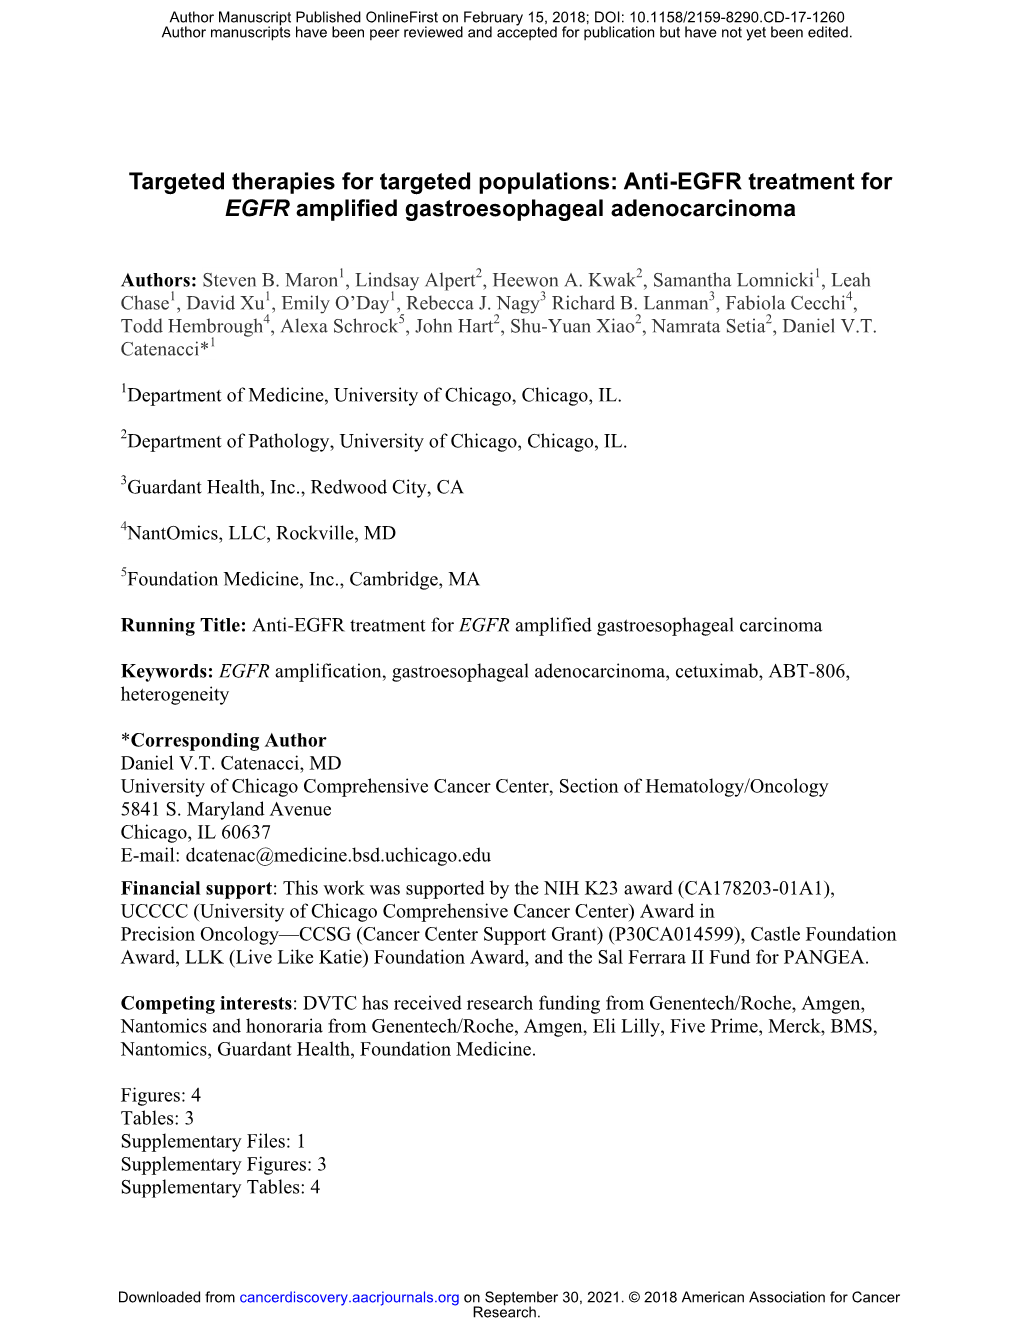 Anti-EGFR Treatment for EGFR Amplified Gastroesophageal Adenocarcinoma